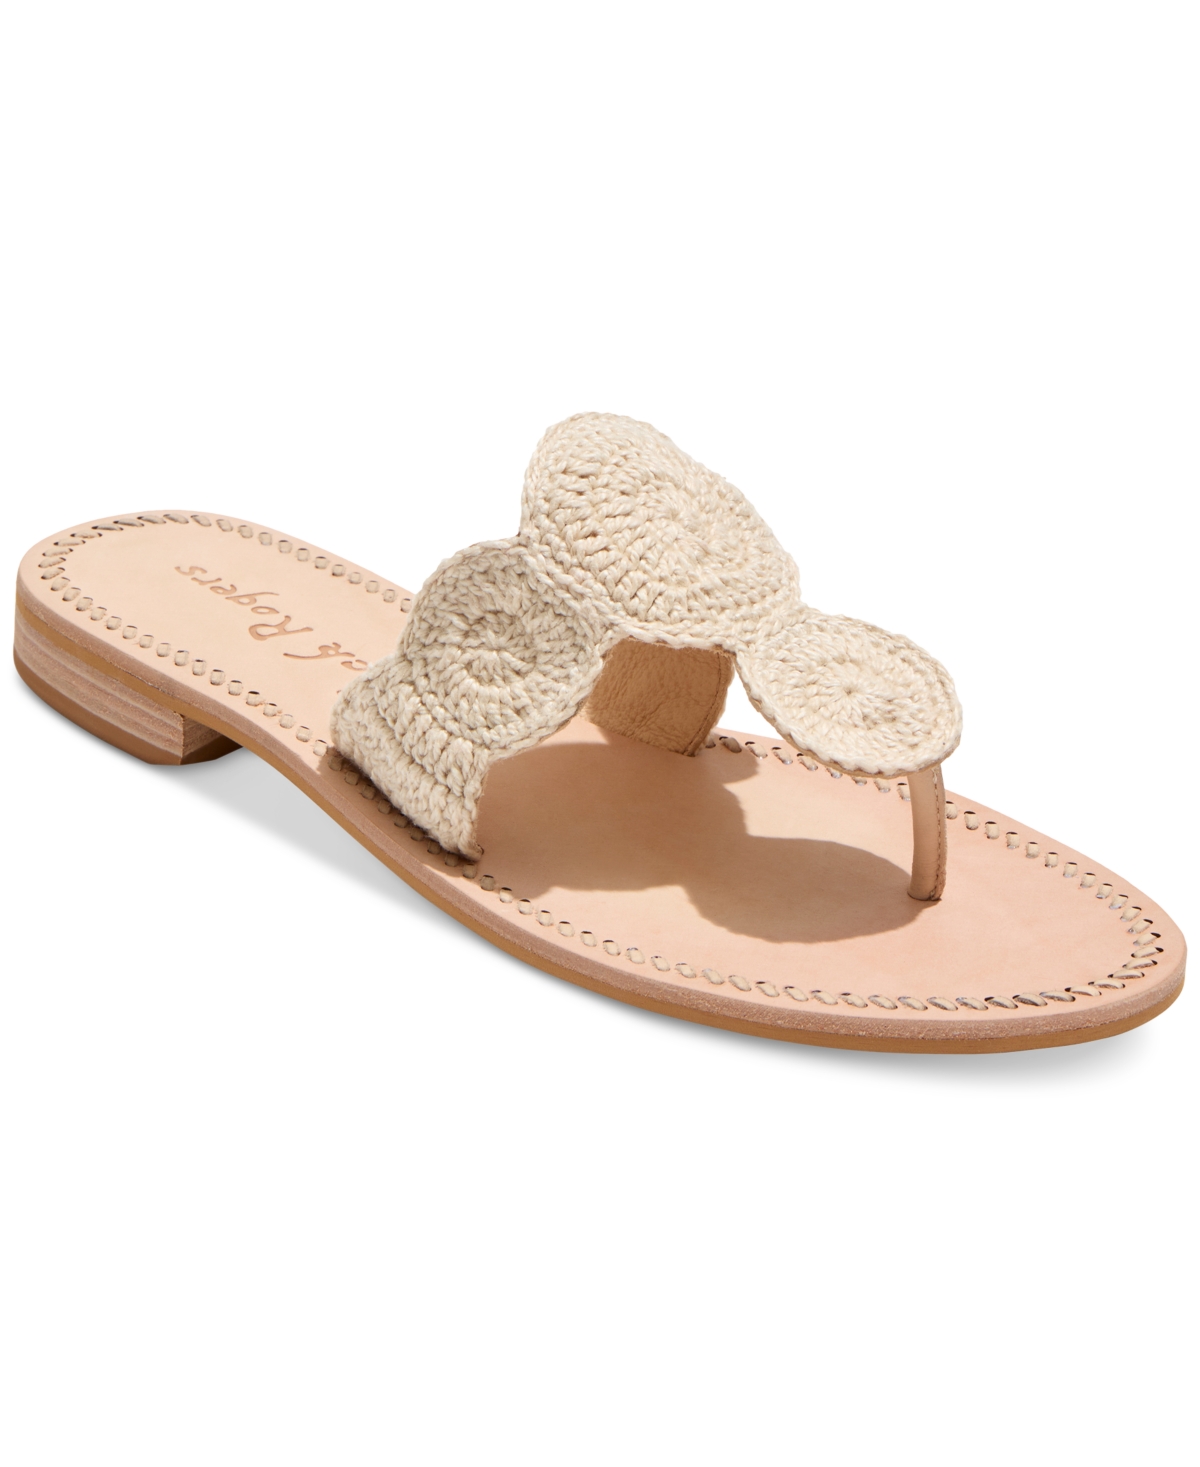 Women's Jack Crochet Slip-On Flat Sandals - Natural